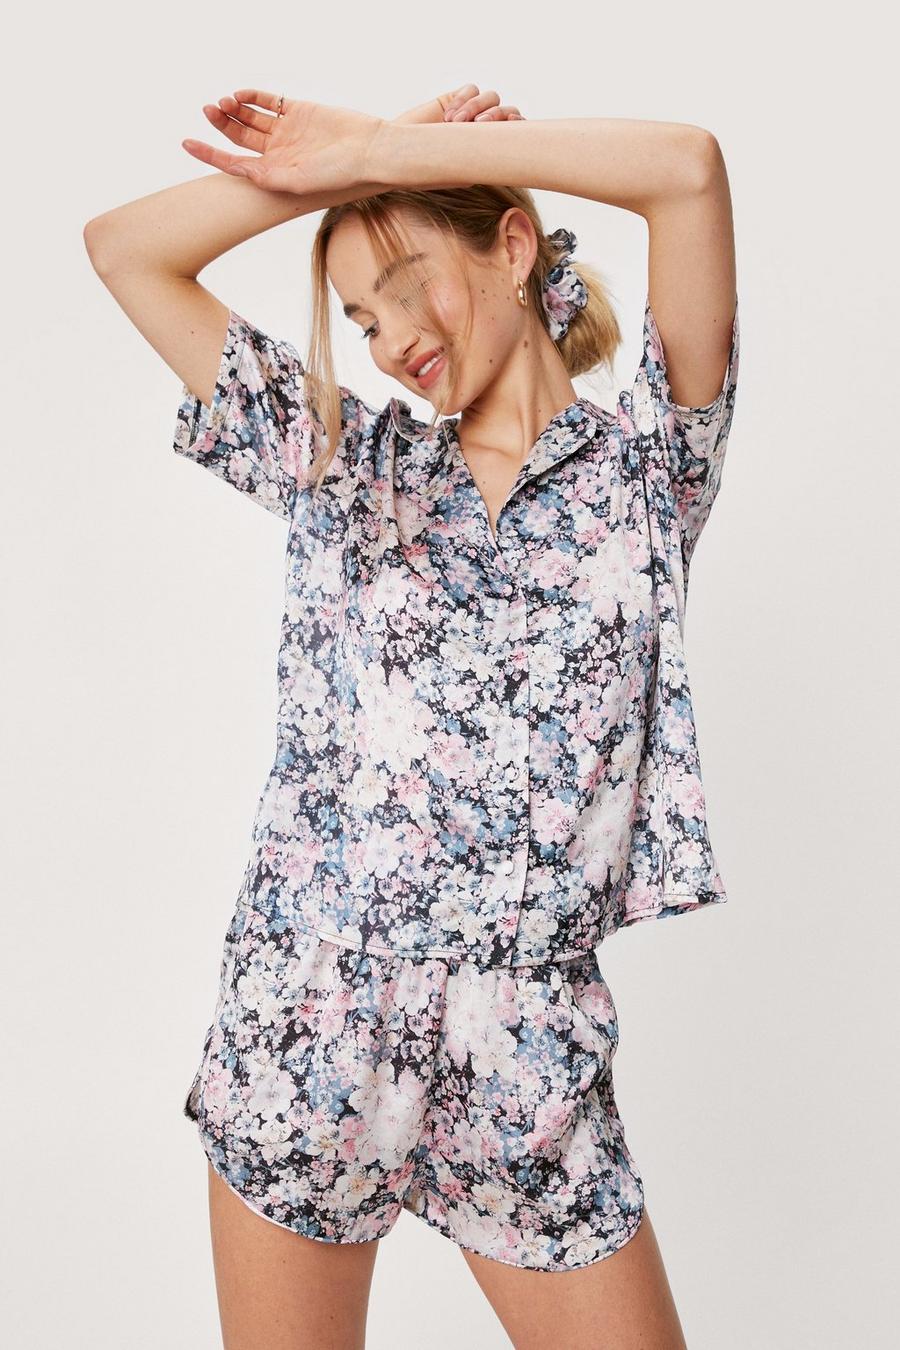 Satin Floral Print Shirt and Shorts Pajama Set